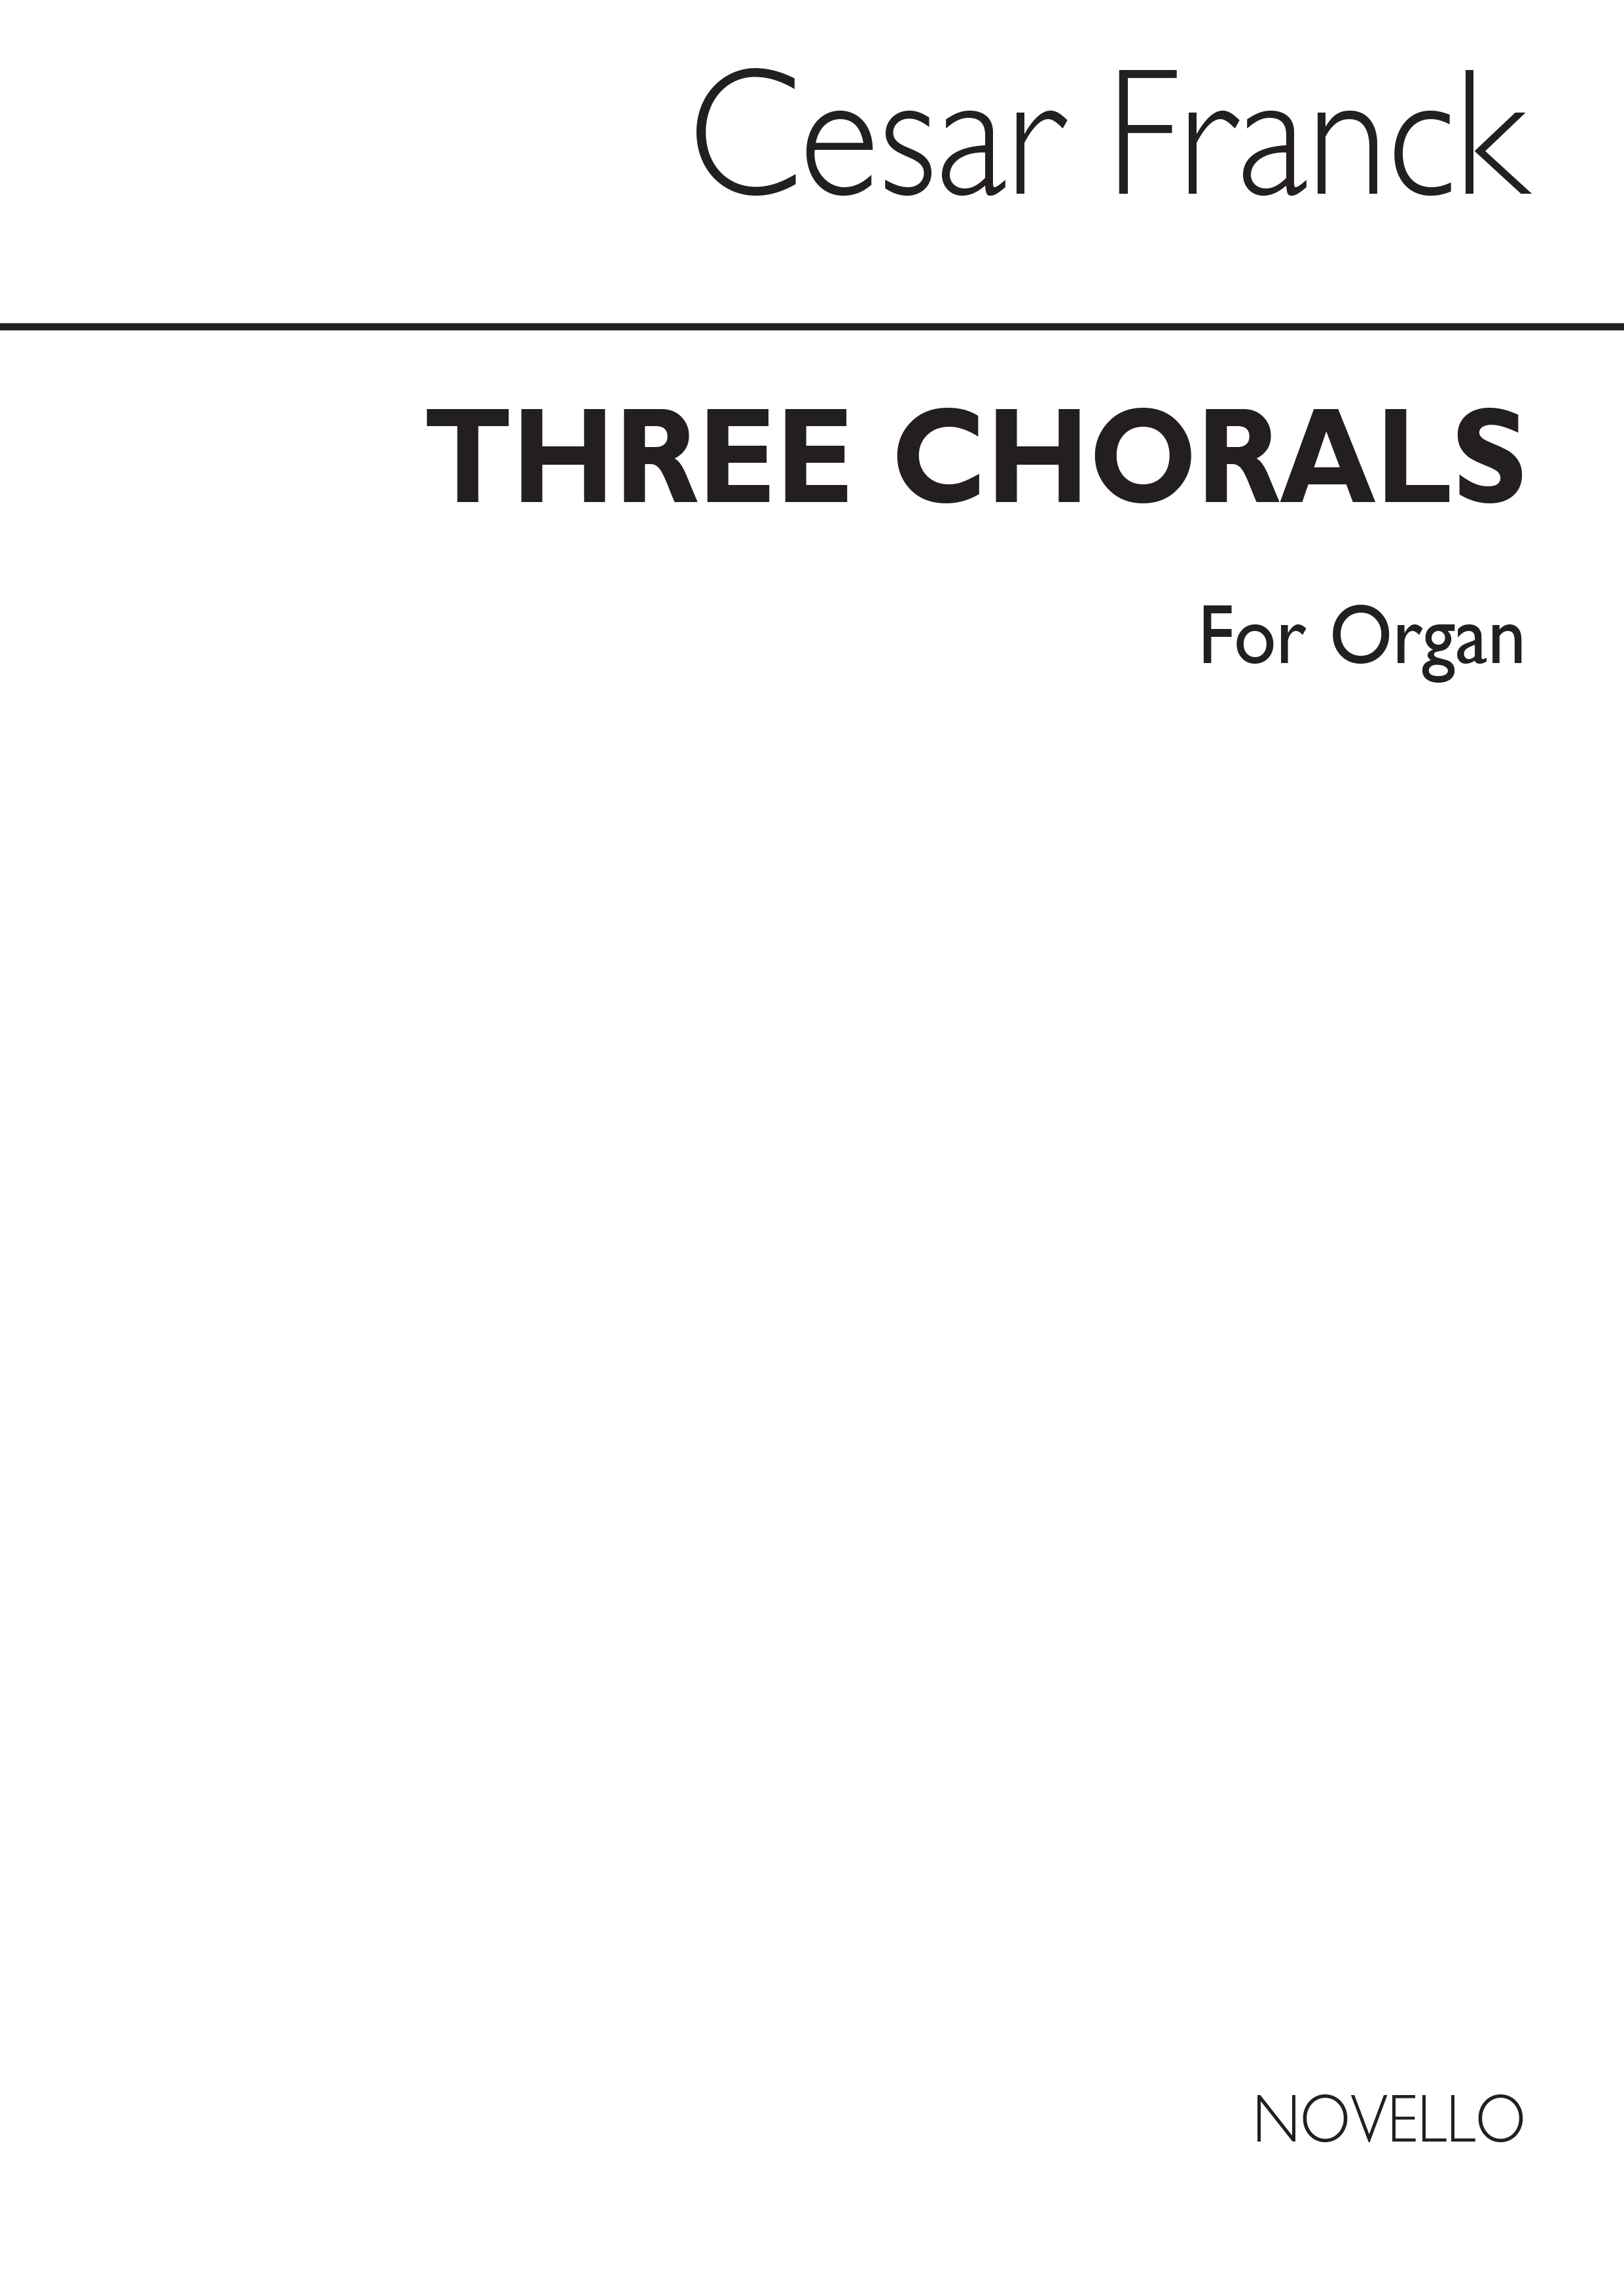 Franck: Three Chorals for Organ